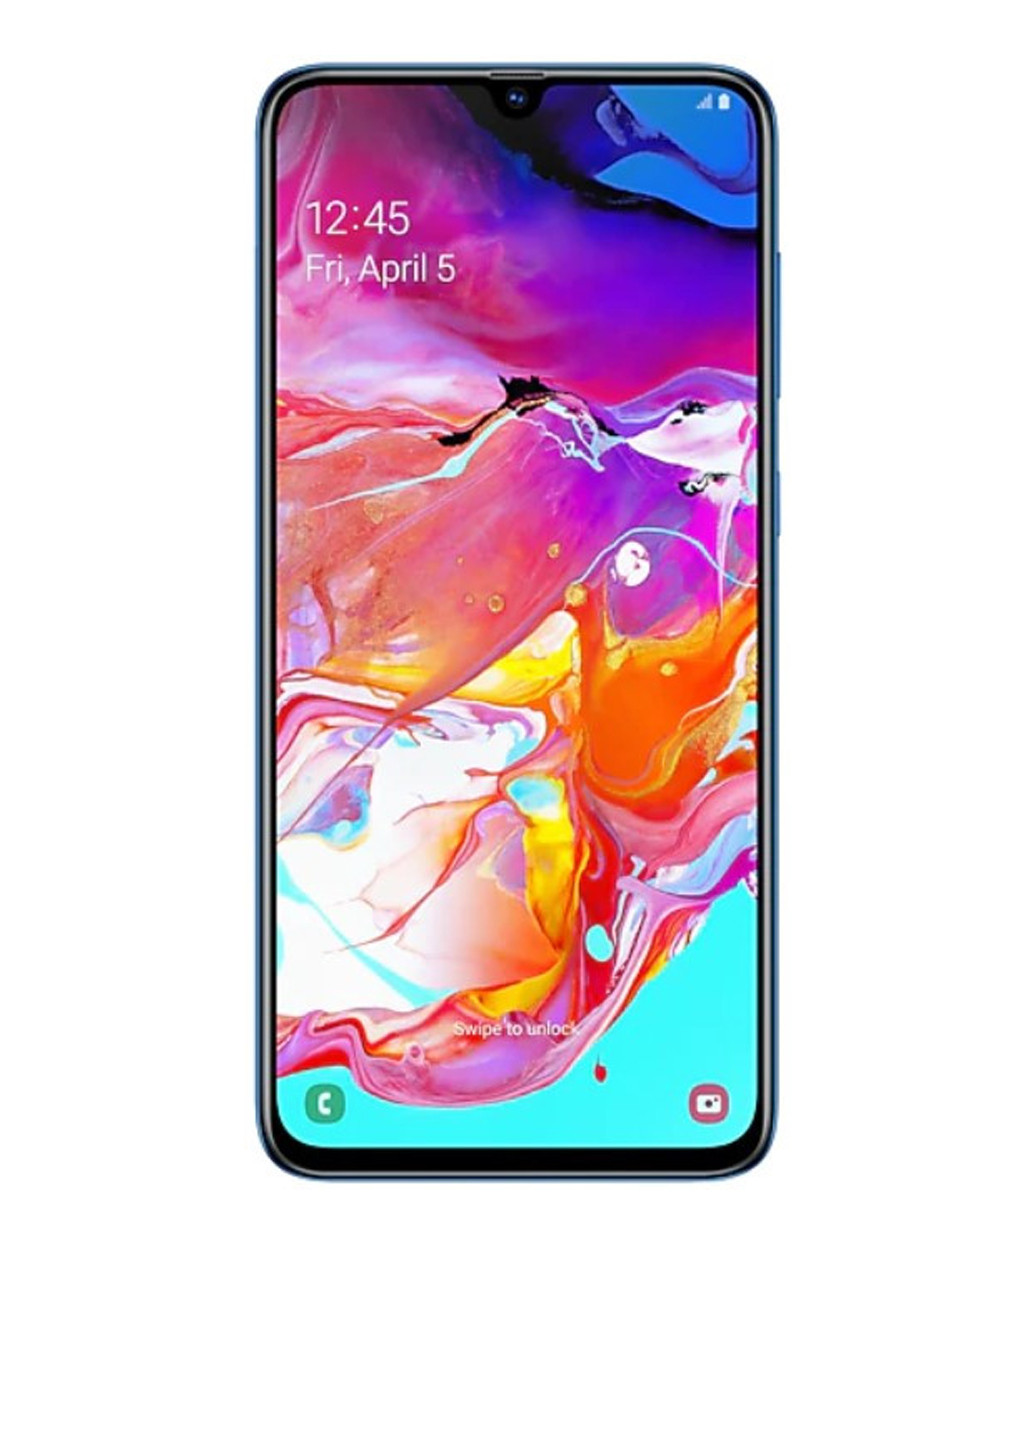 Смартфон Samsung galaxy a70 6/128gb blue (sm-a705fzbusek) (130349488)